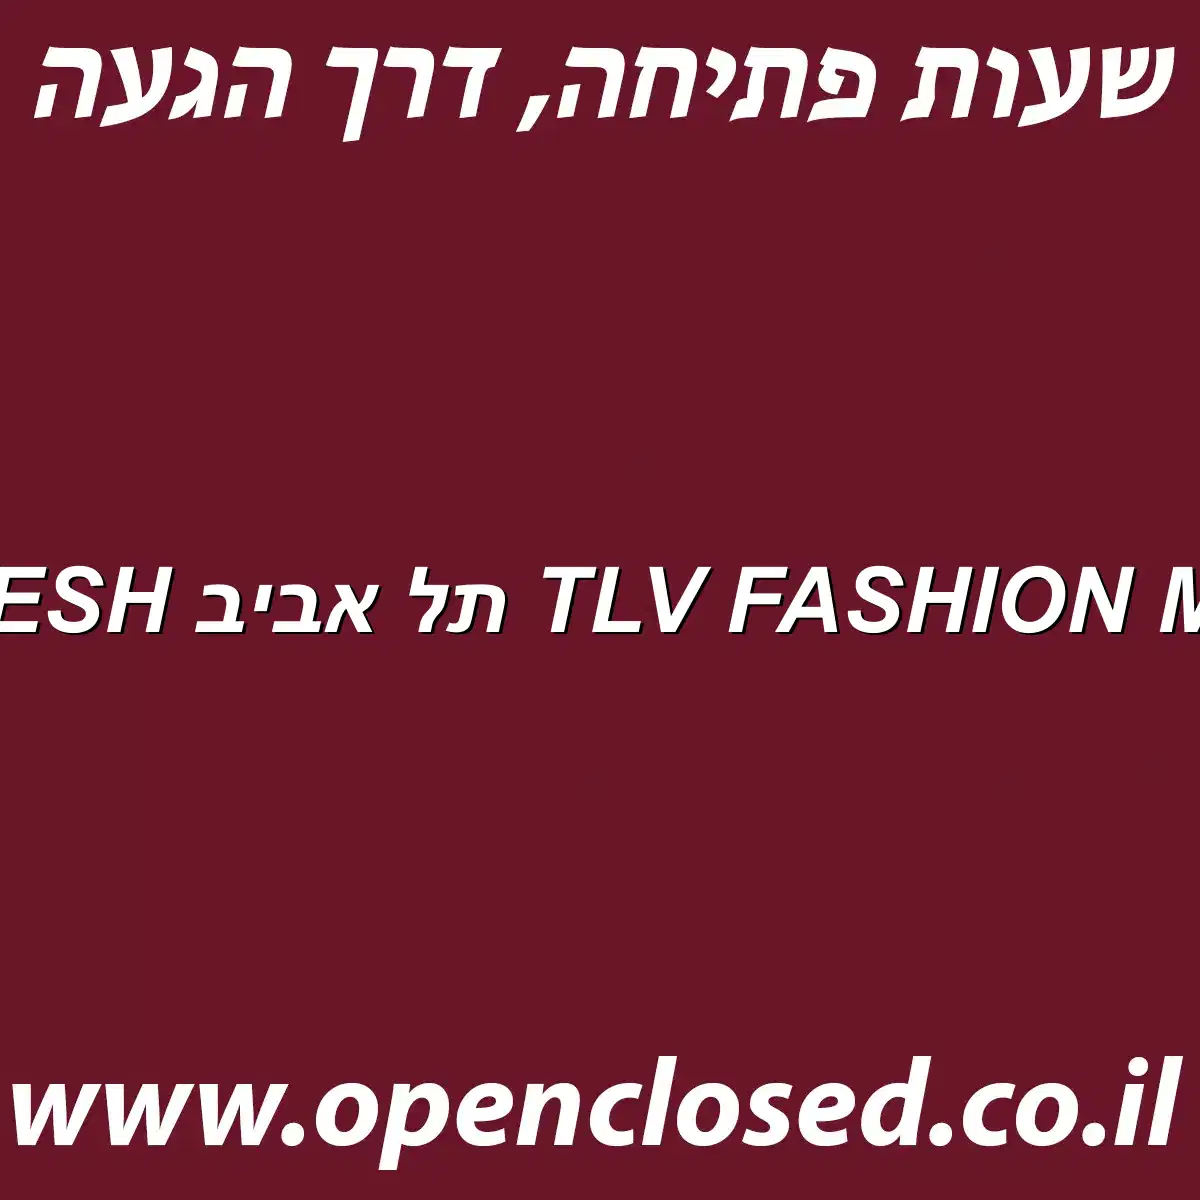 BFRESH תל אביב TLV FASHION MALL